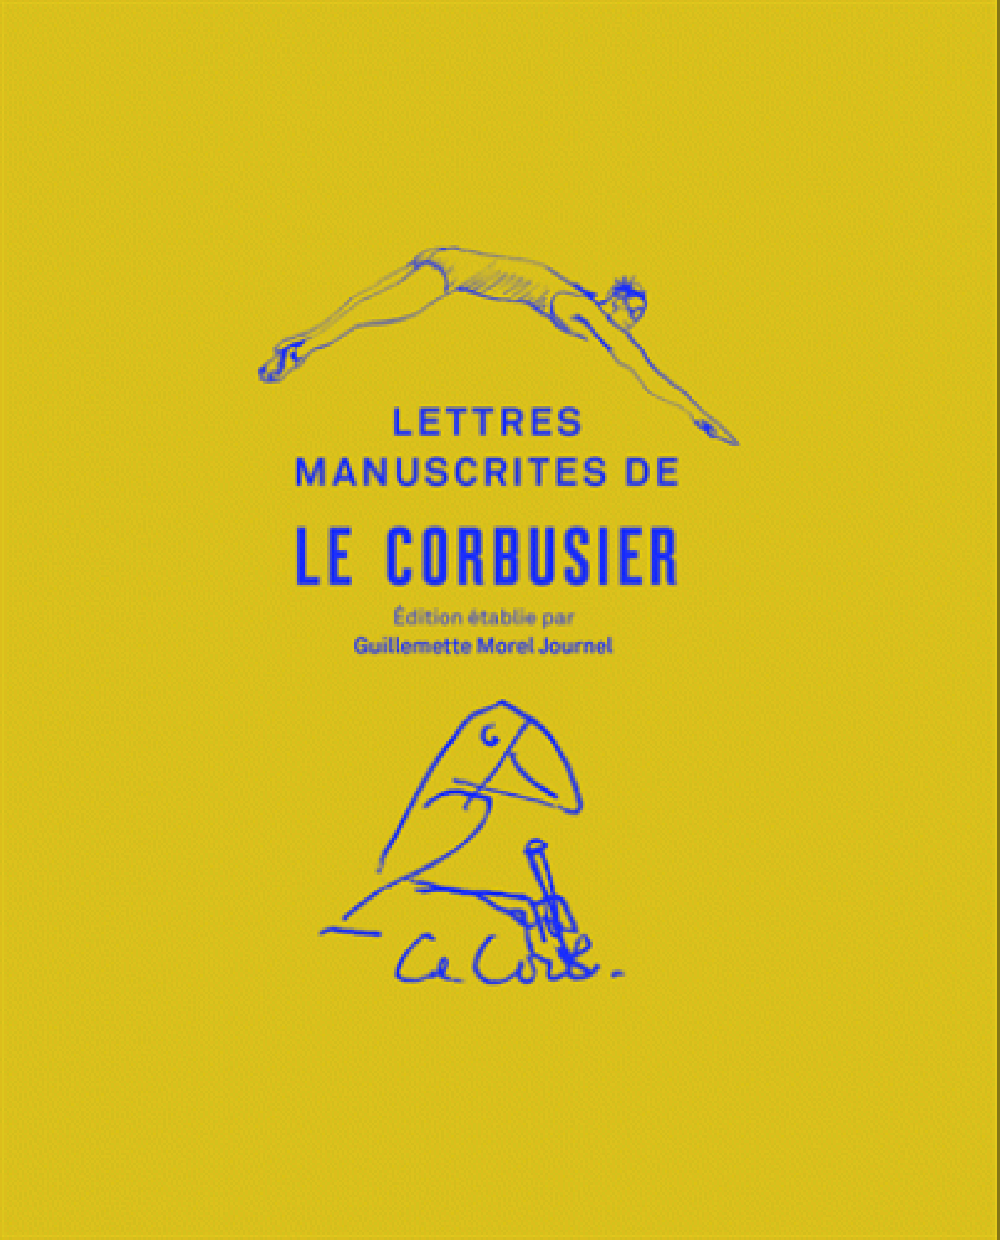 Les lettres manuscrites de Le Corbusier